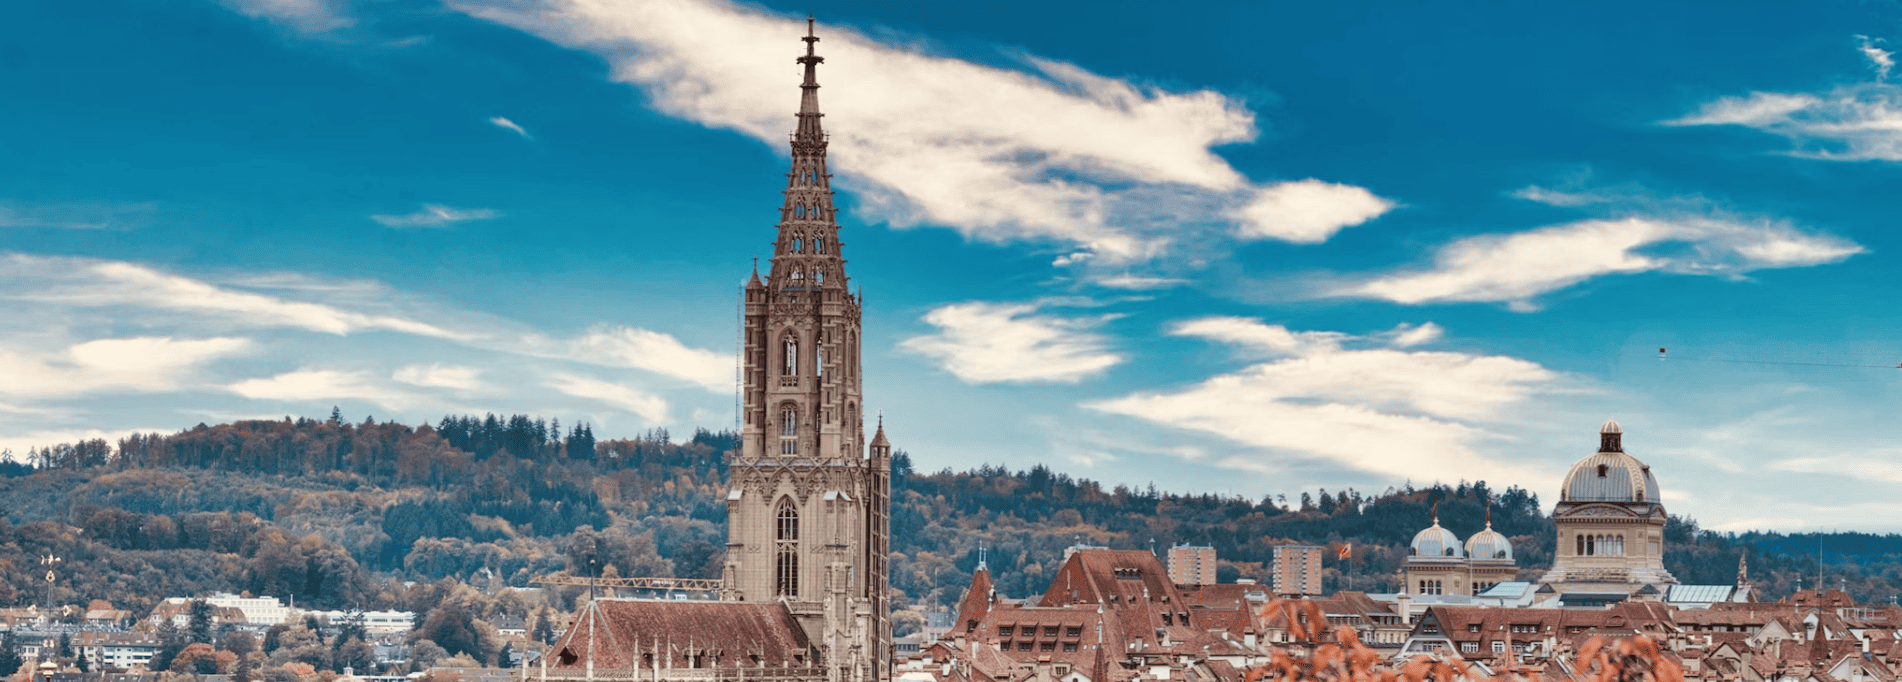 Liste der 3 größten Unternehmen in Bern